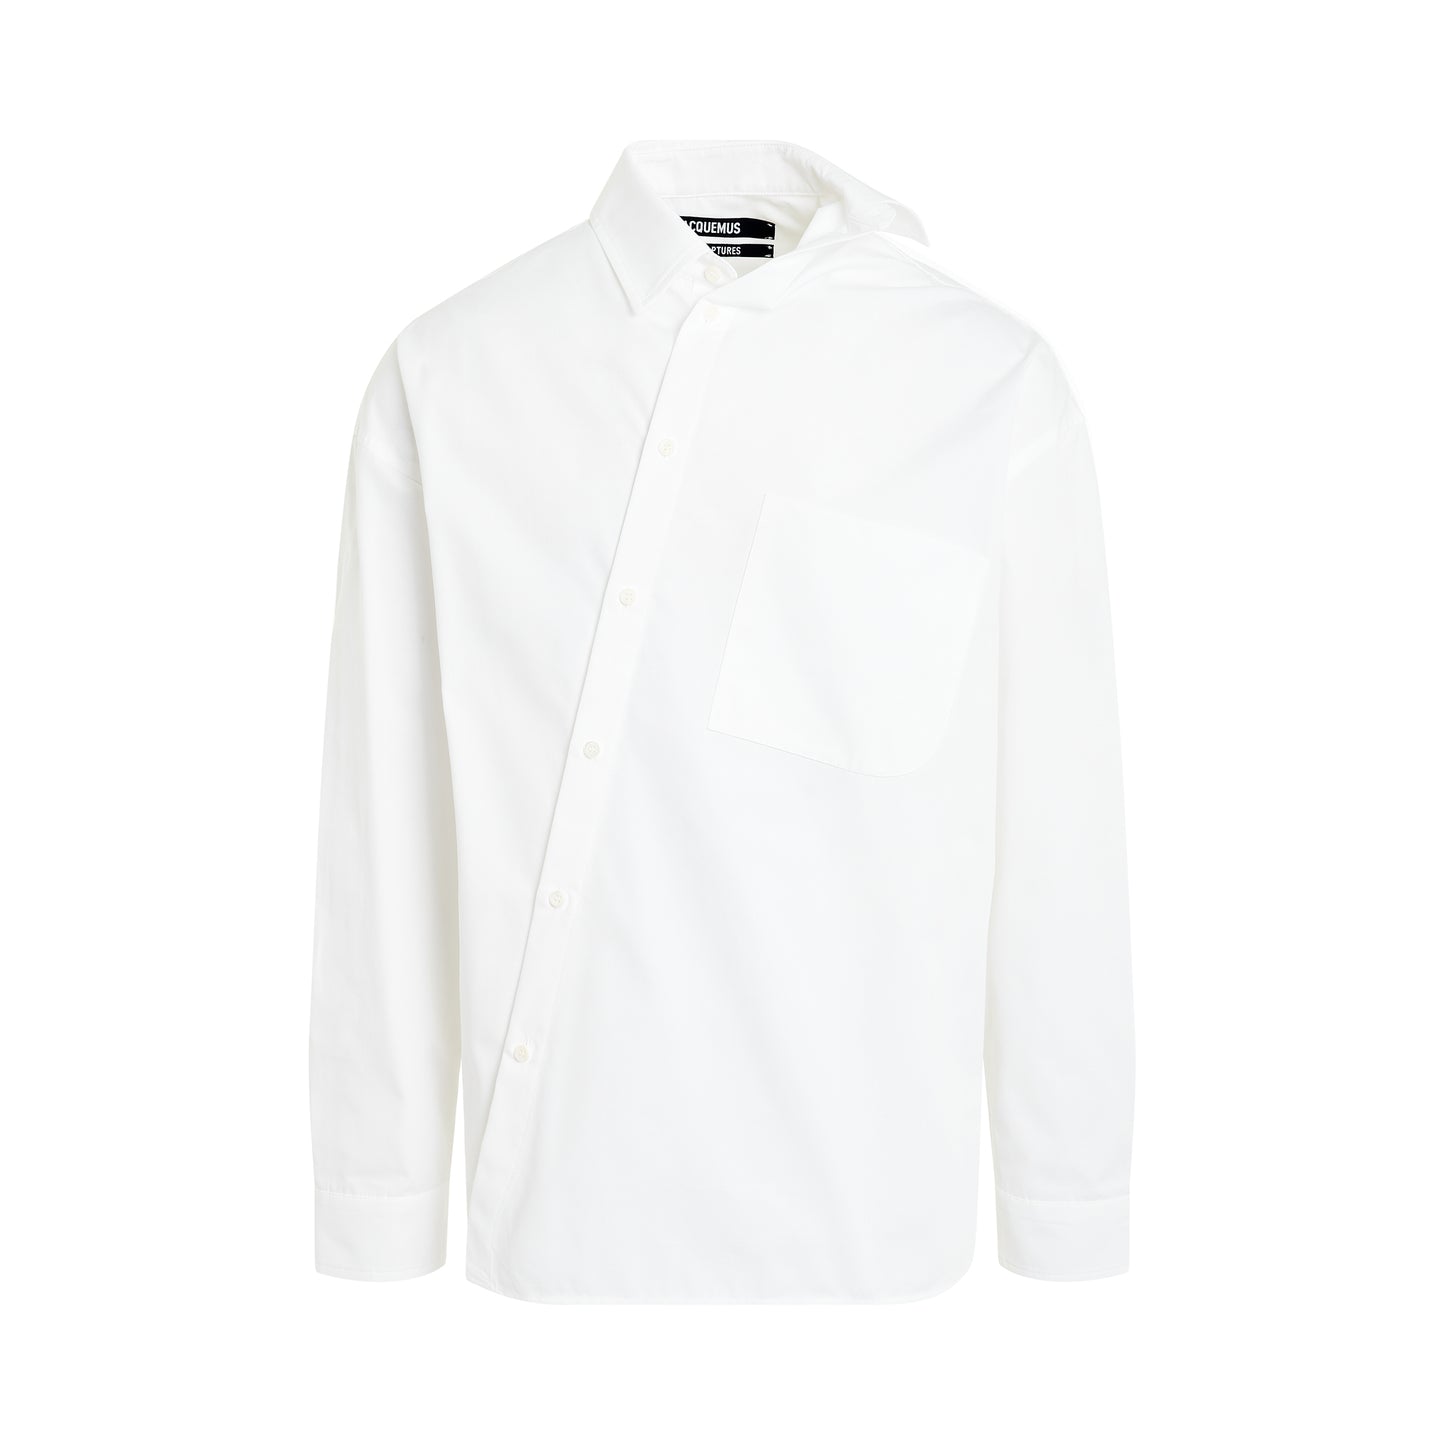 Cuadro Asymmetric Shirt in White